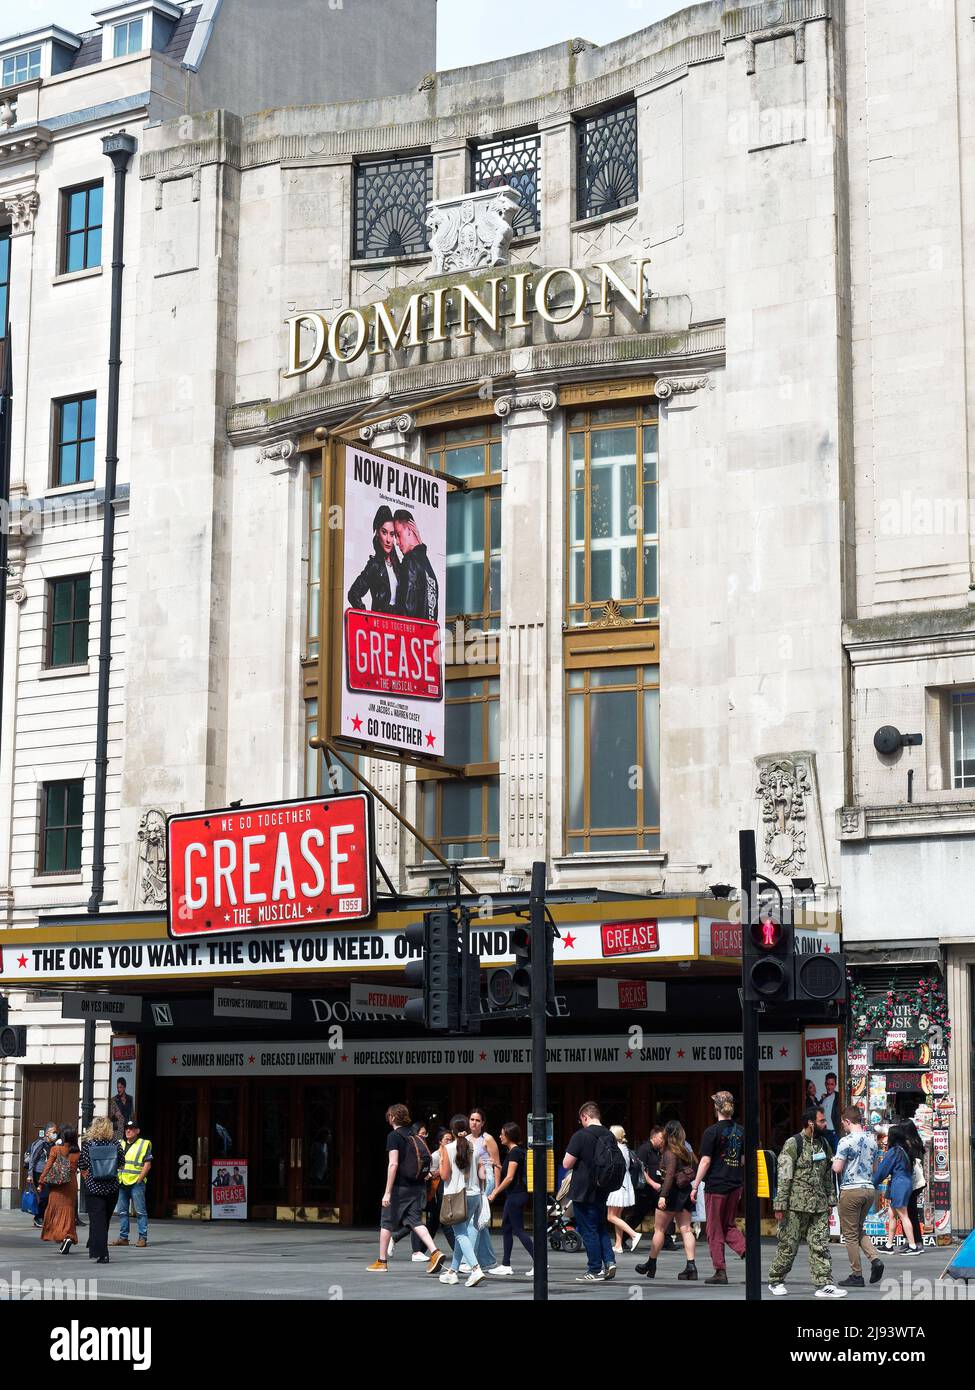 Vue de face du Dominion Theatre de Londres Banque D'Images